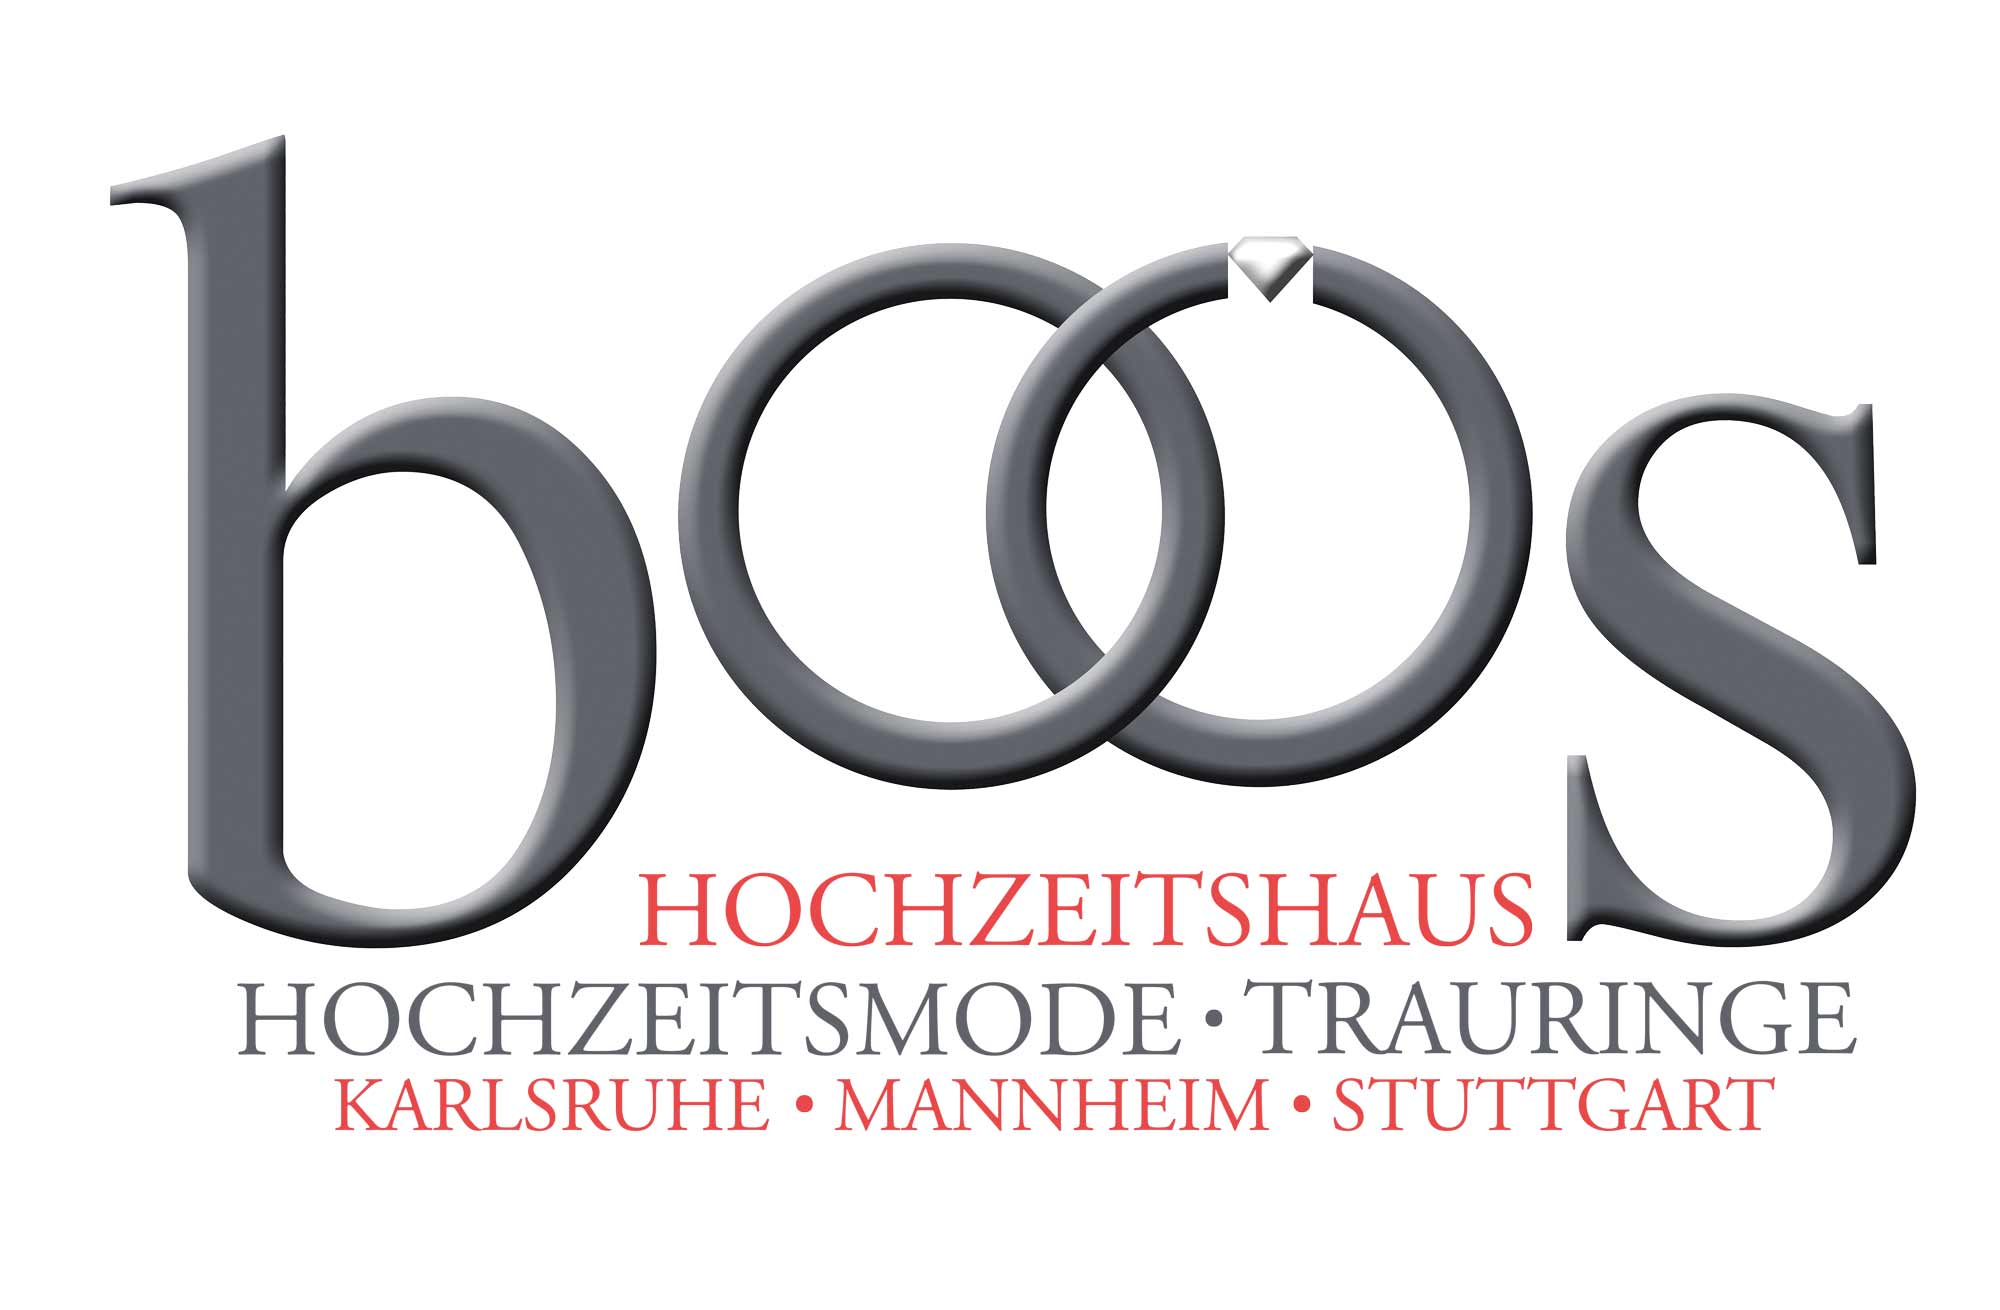 Logo von Hochzeitshaus Boos in Karlsruhe